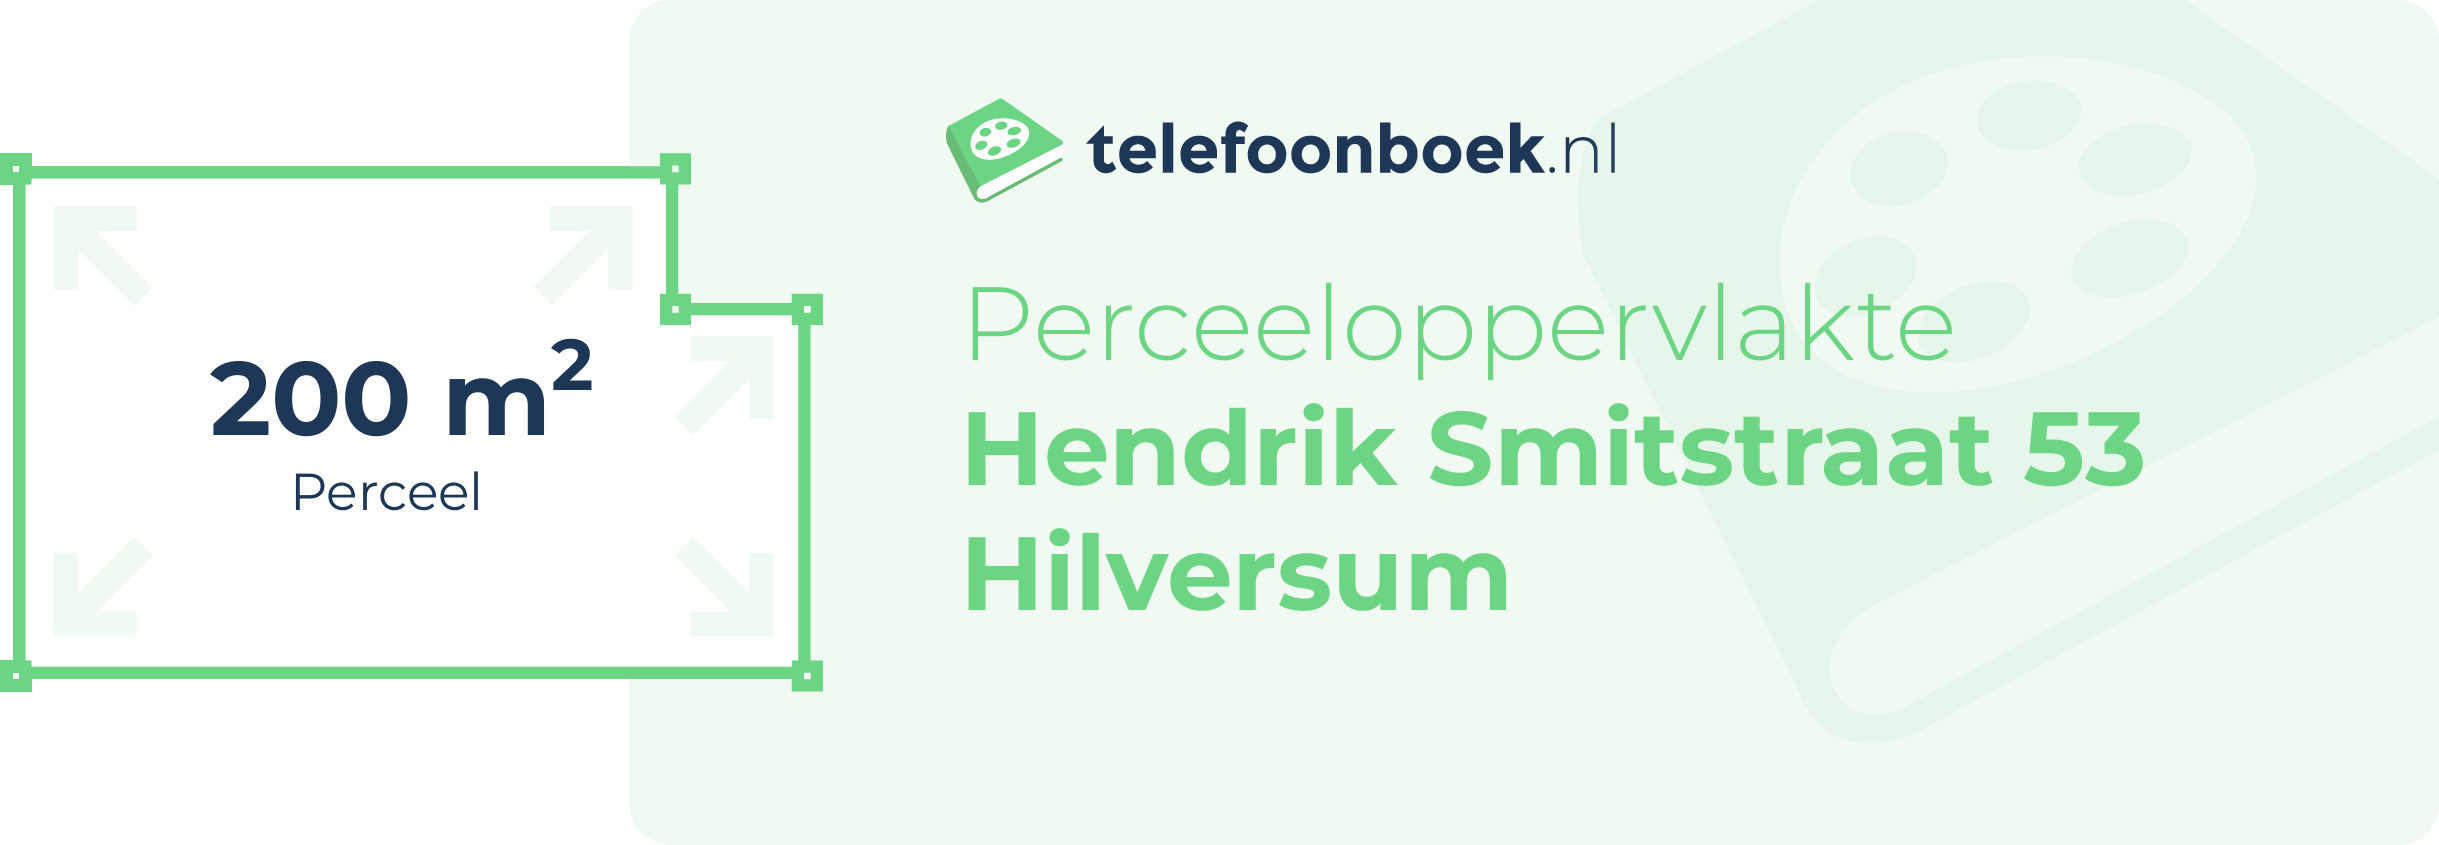 Perceeloppervlakte Hendrik Smitstraat 53 Hilversum